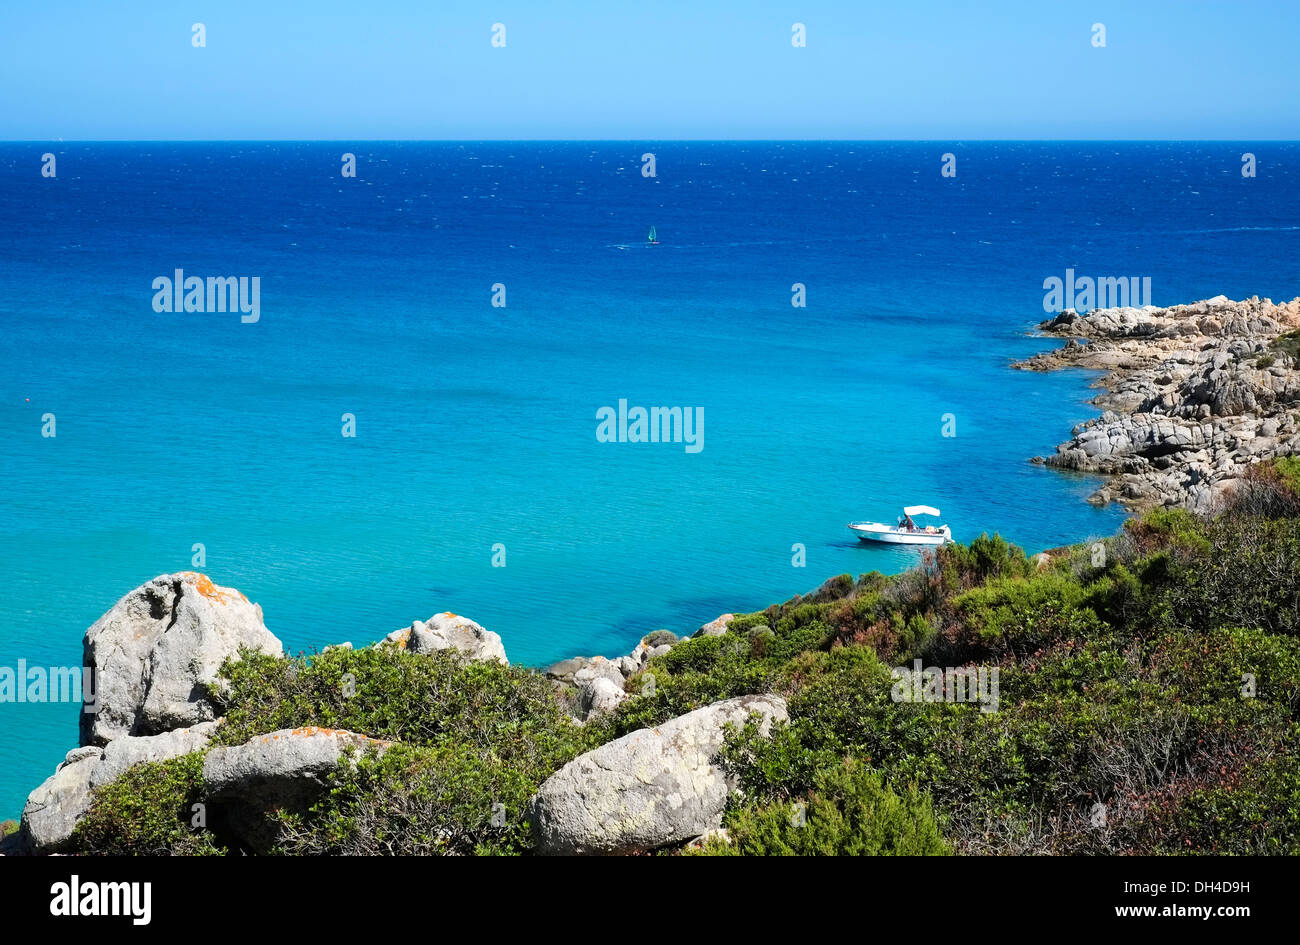 Imbarcazione in una baia con il mare blu di Chia, Sardegna, Italia Foto Stock